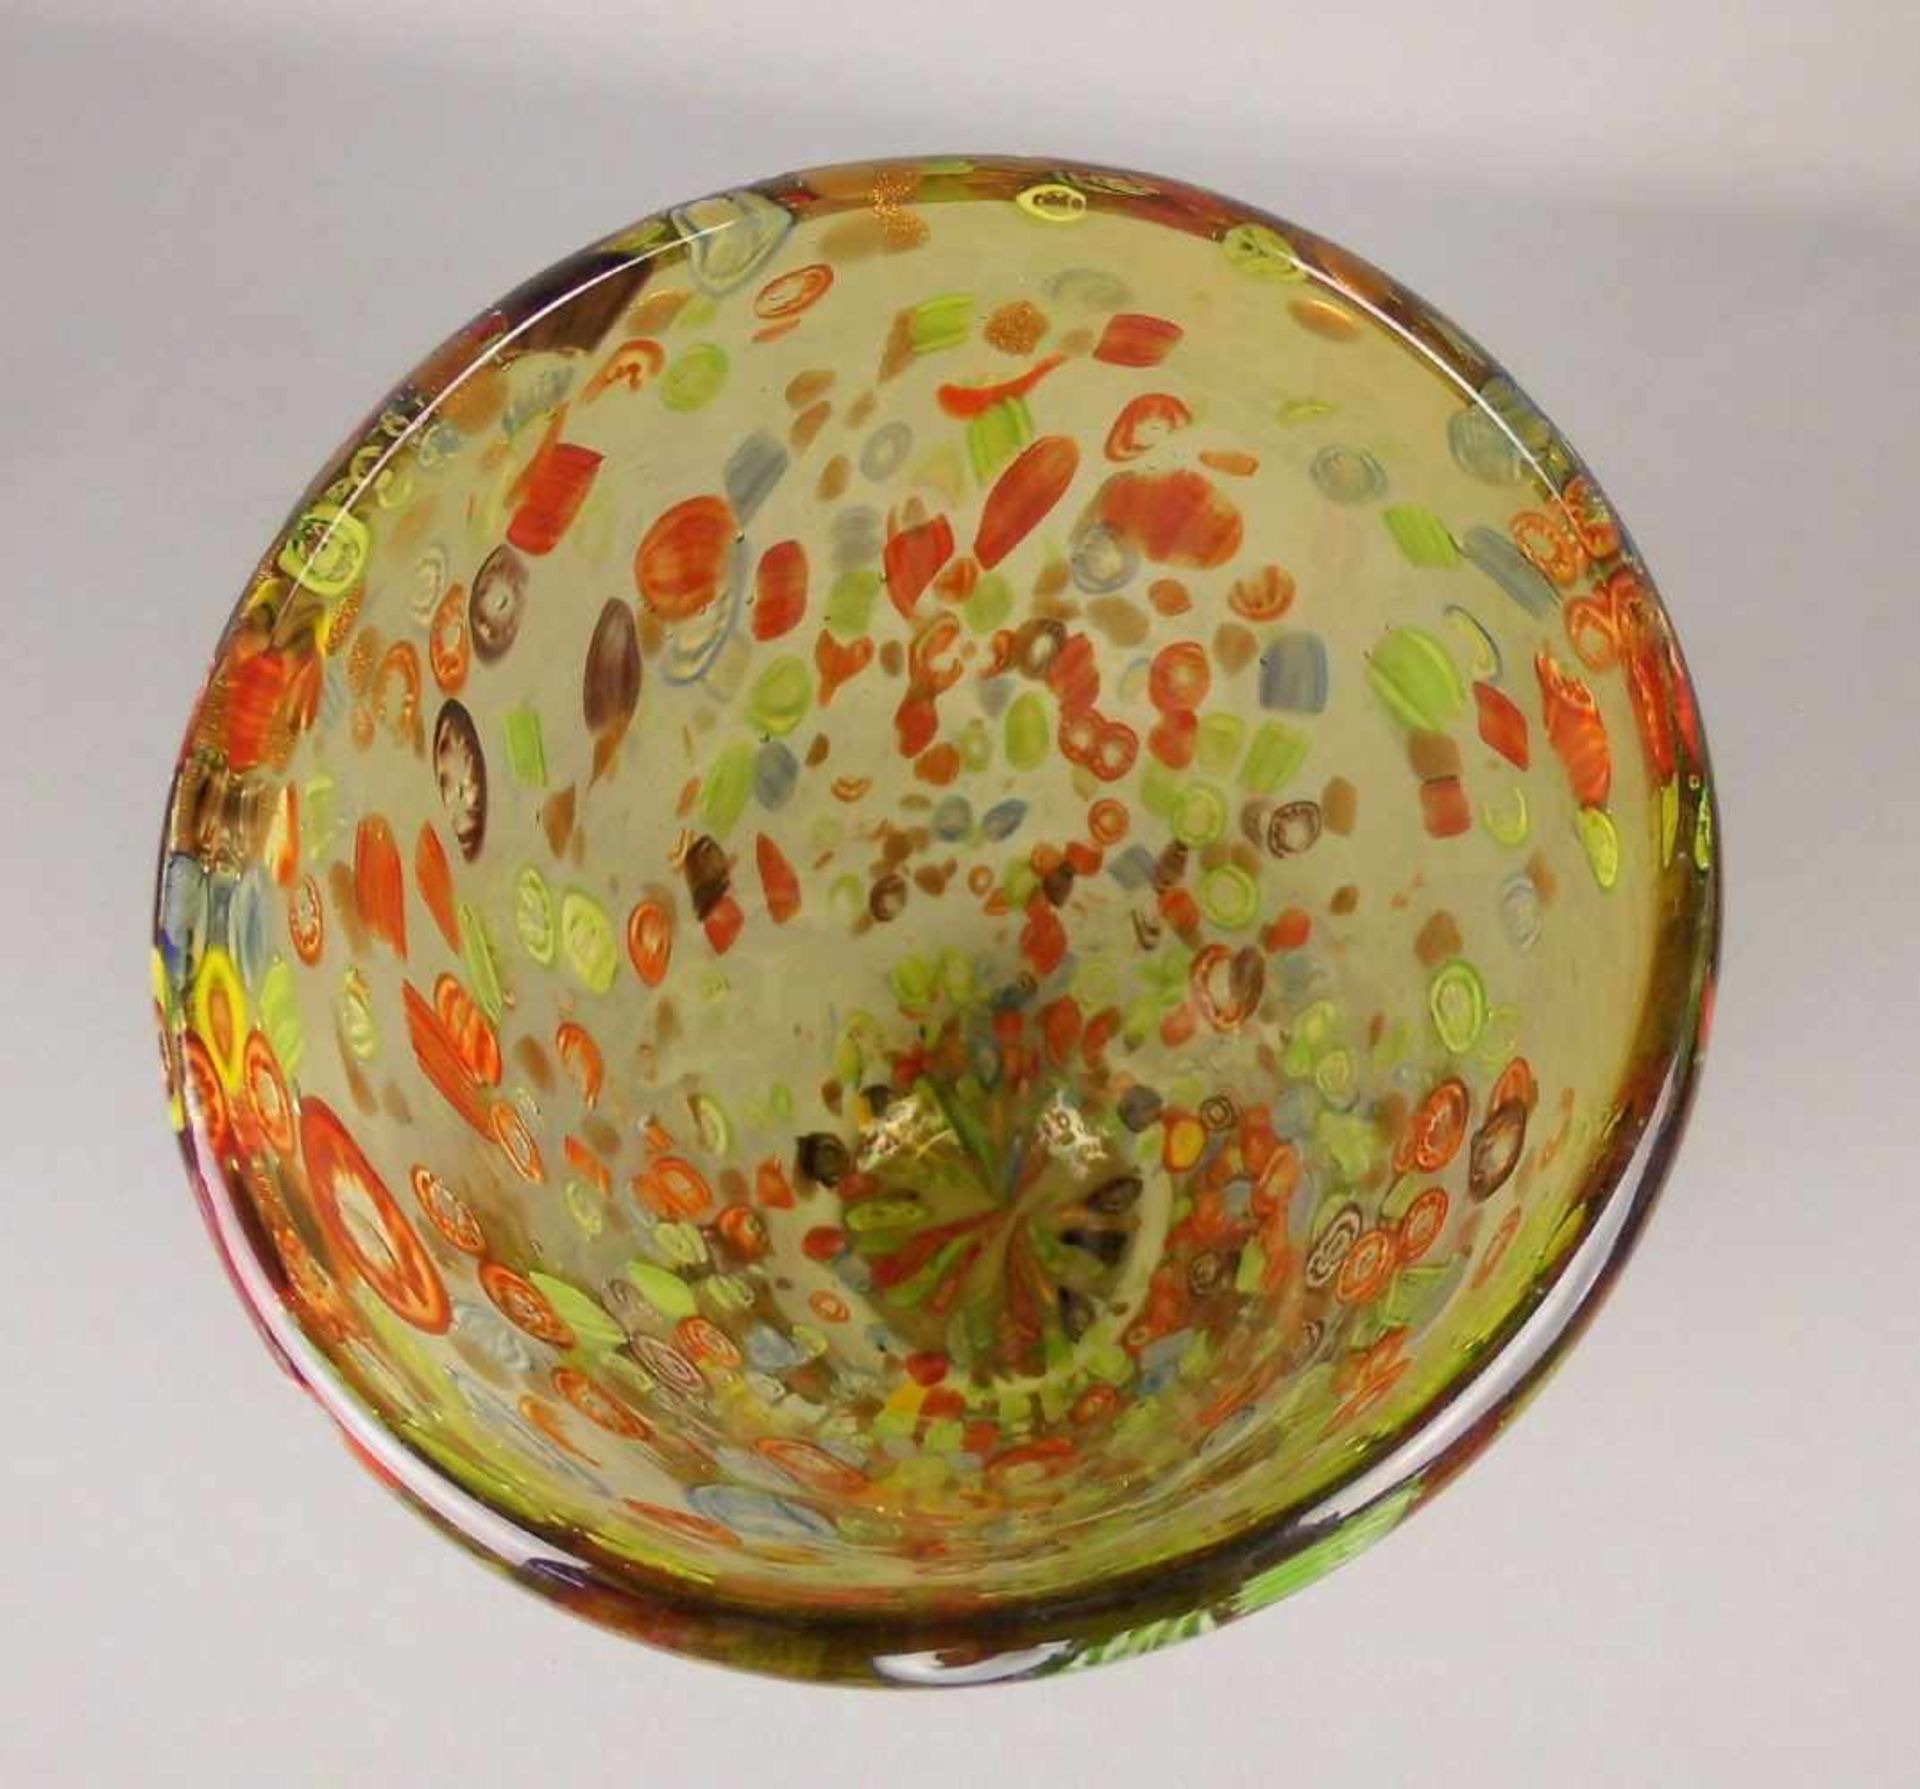 MURANO GLASVASE "MILLE FIORI", grünliches Glas mit Blaseneinschlüssen, eingeschmolzenen - Bild 4 aus 5